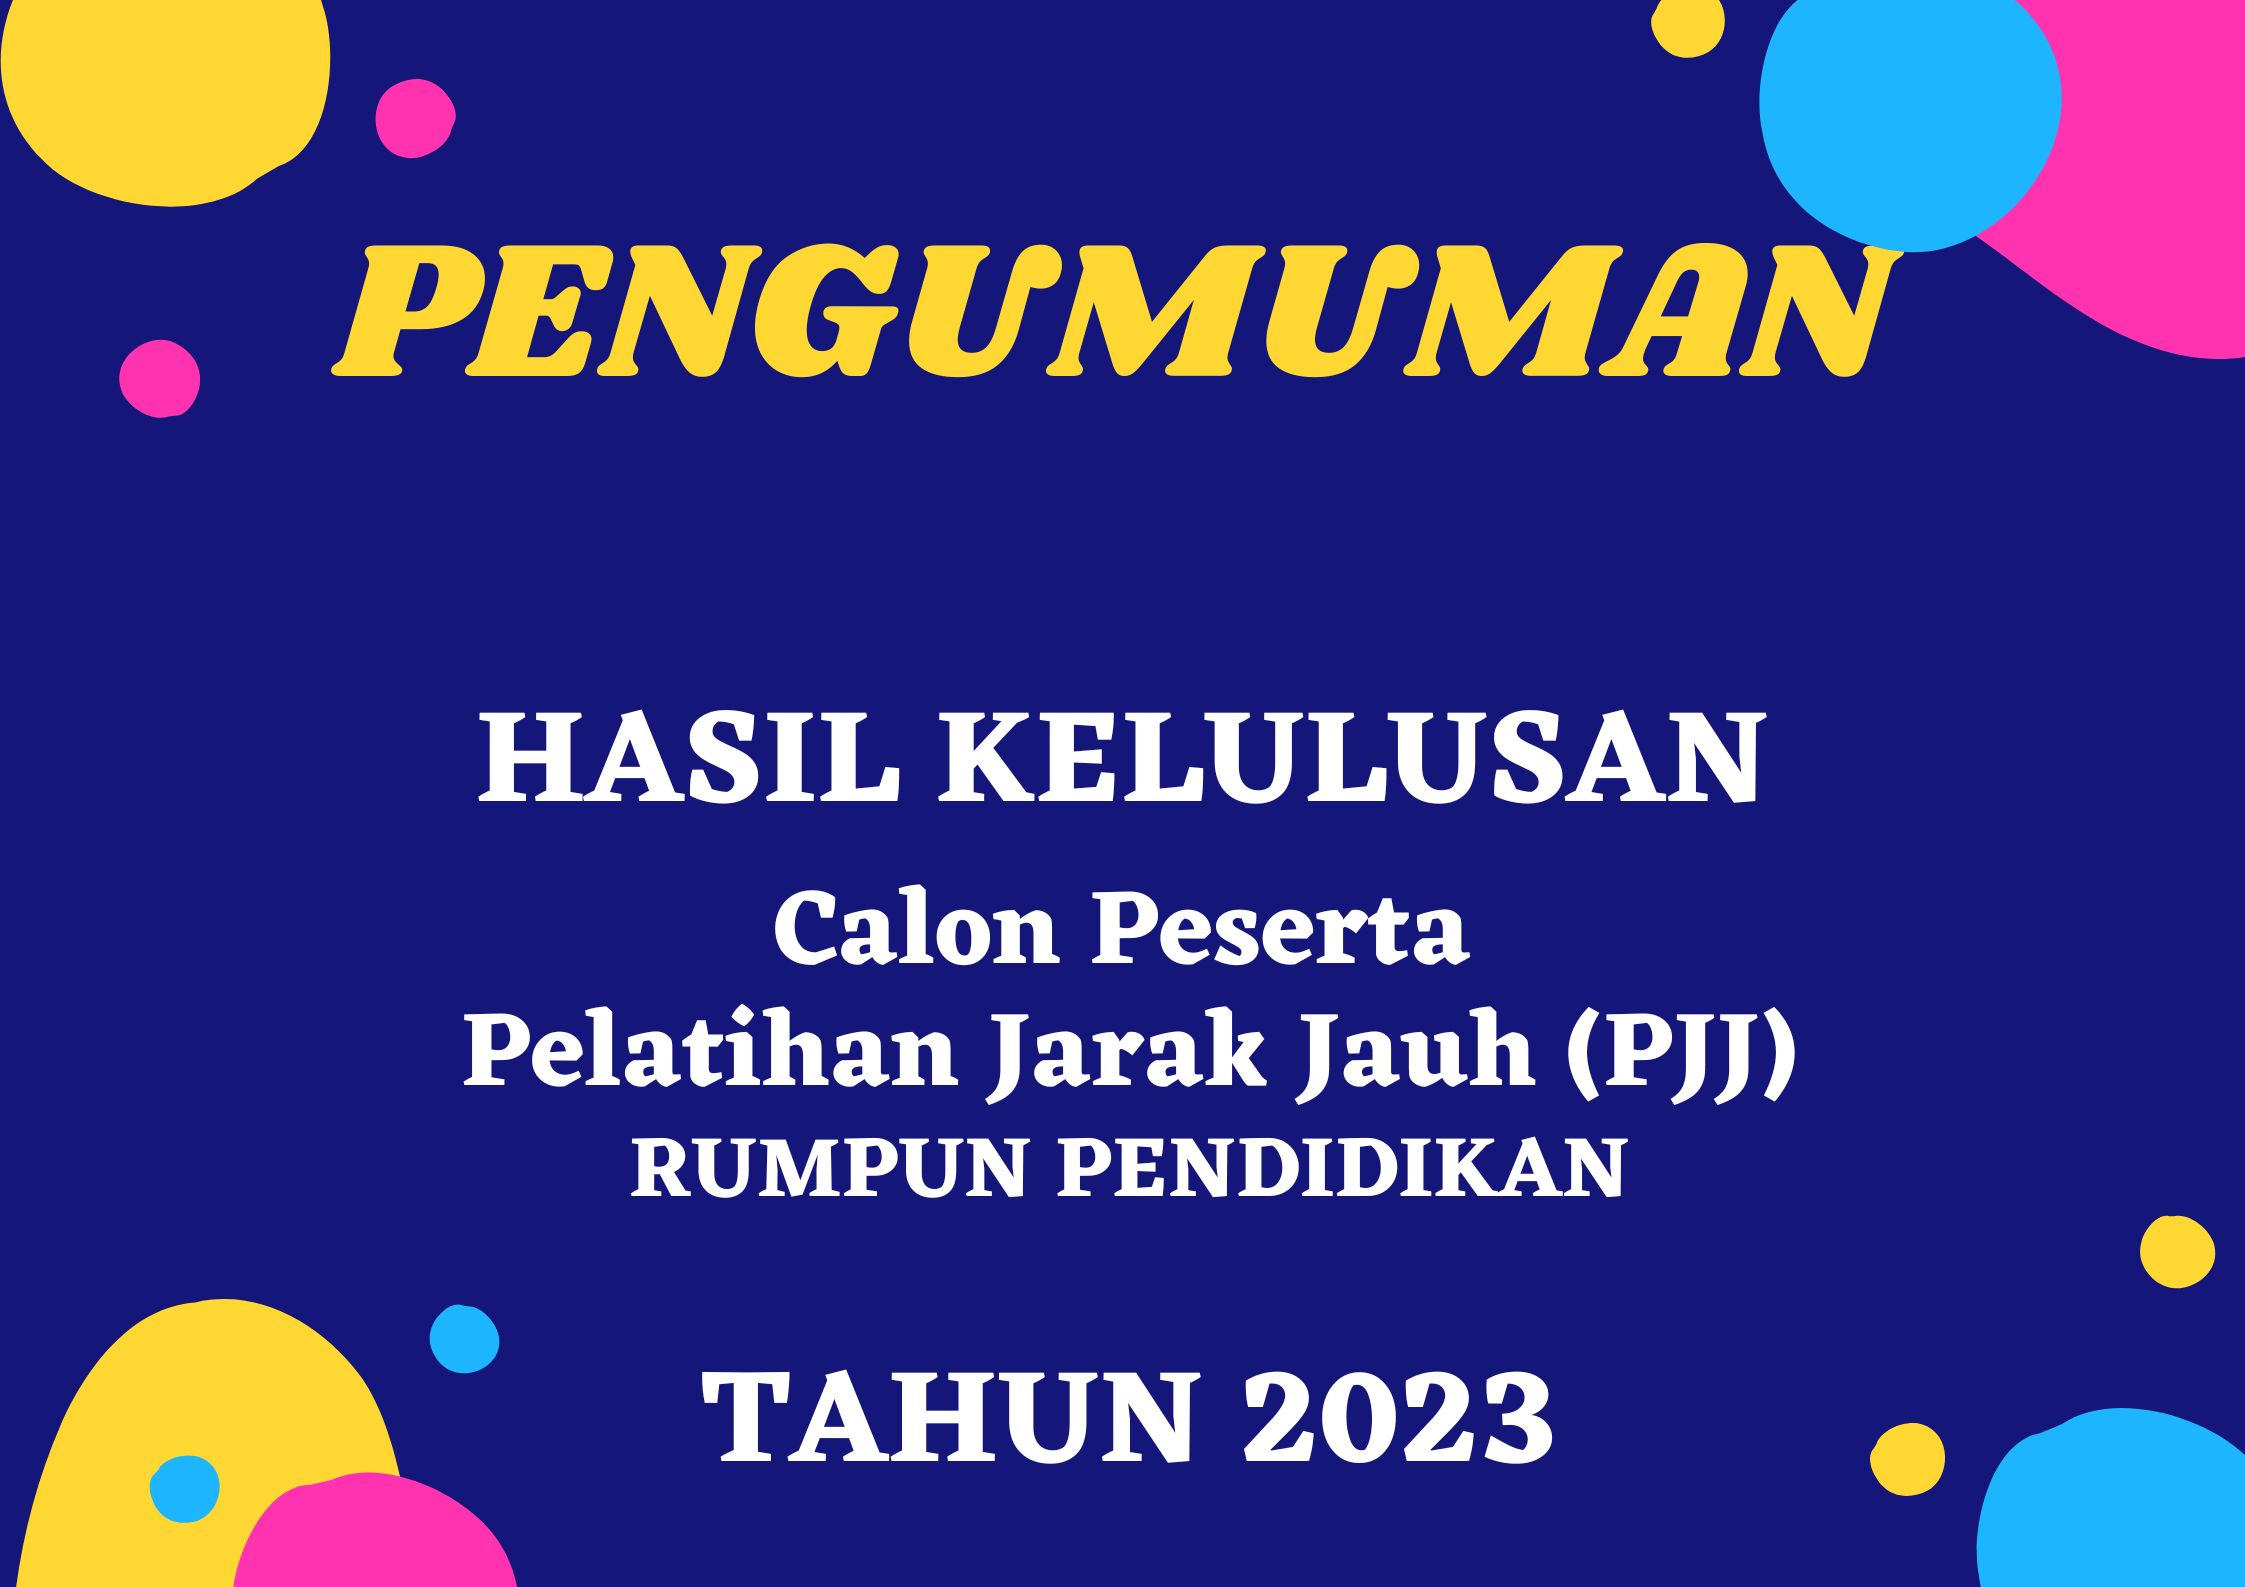 Hasil Kelulusan Calon Peserta Pelatihan Jarak Jauh (PJJ) Rumpun Pendidikan BDK Bandung Tahun 2023